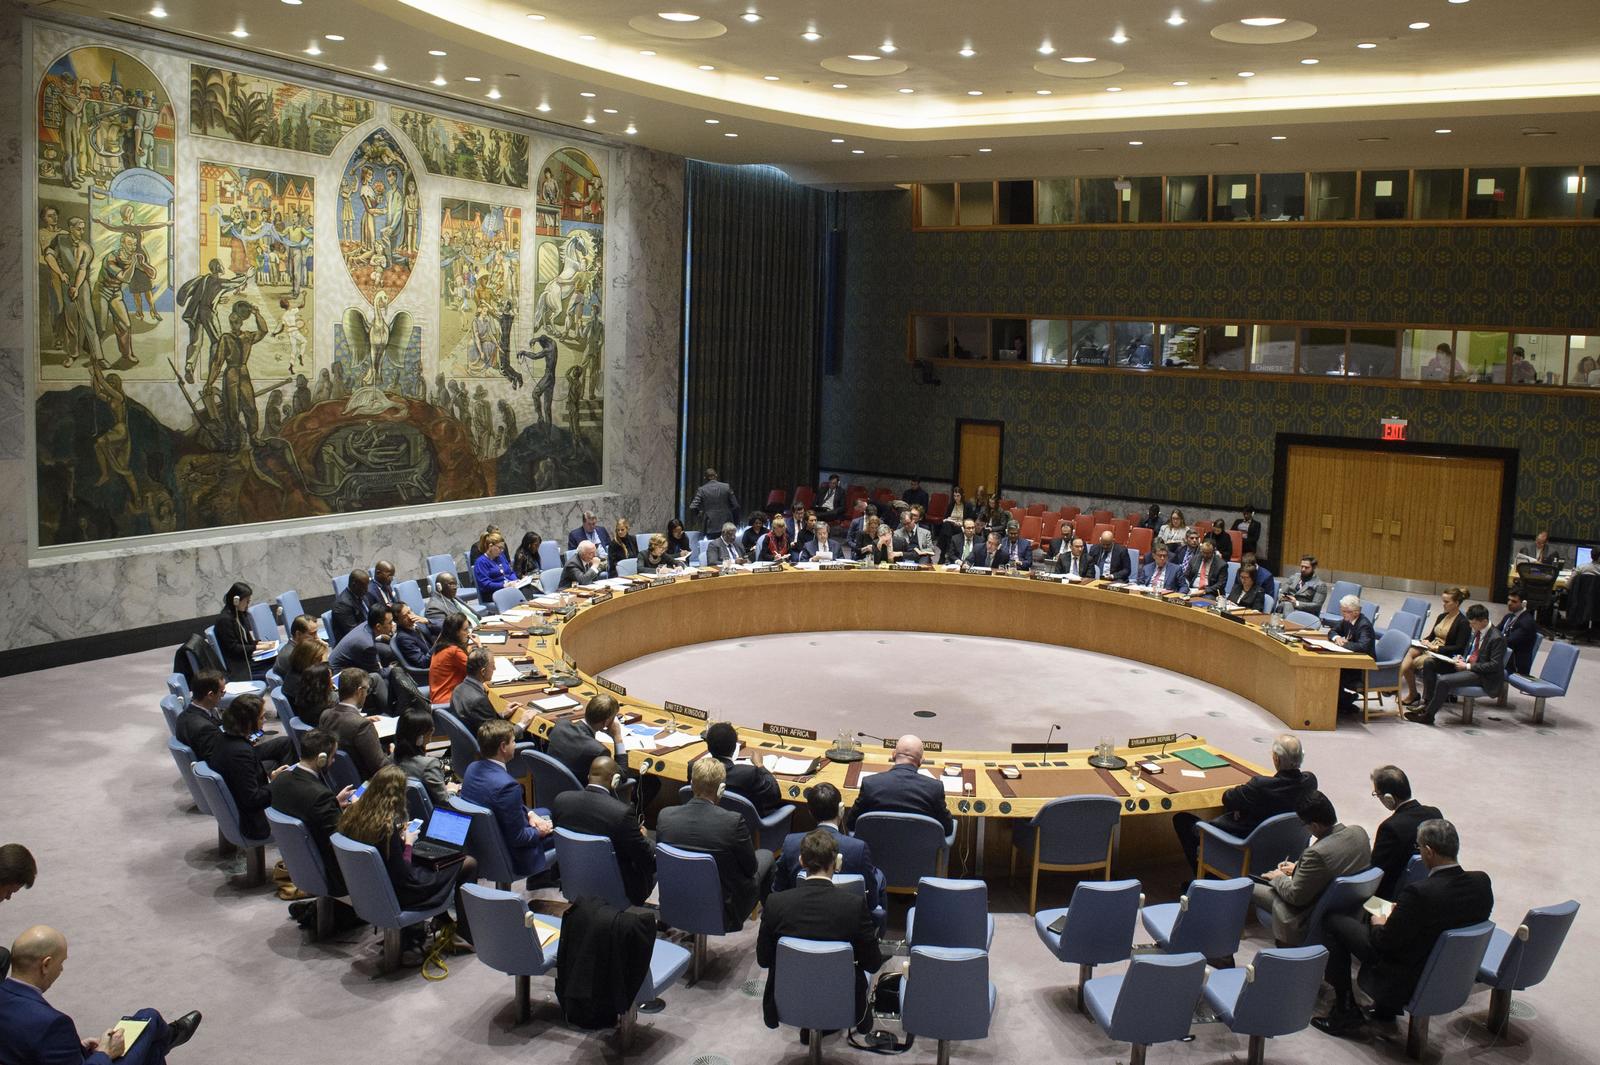 EUA y Rusia impulsan en la ONU resoluciones contrarias